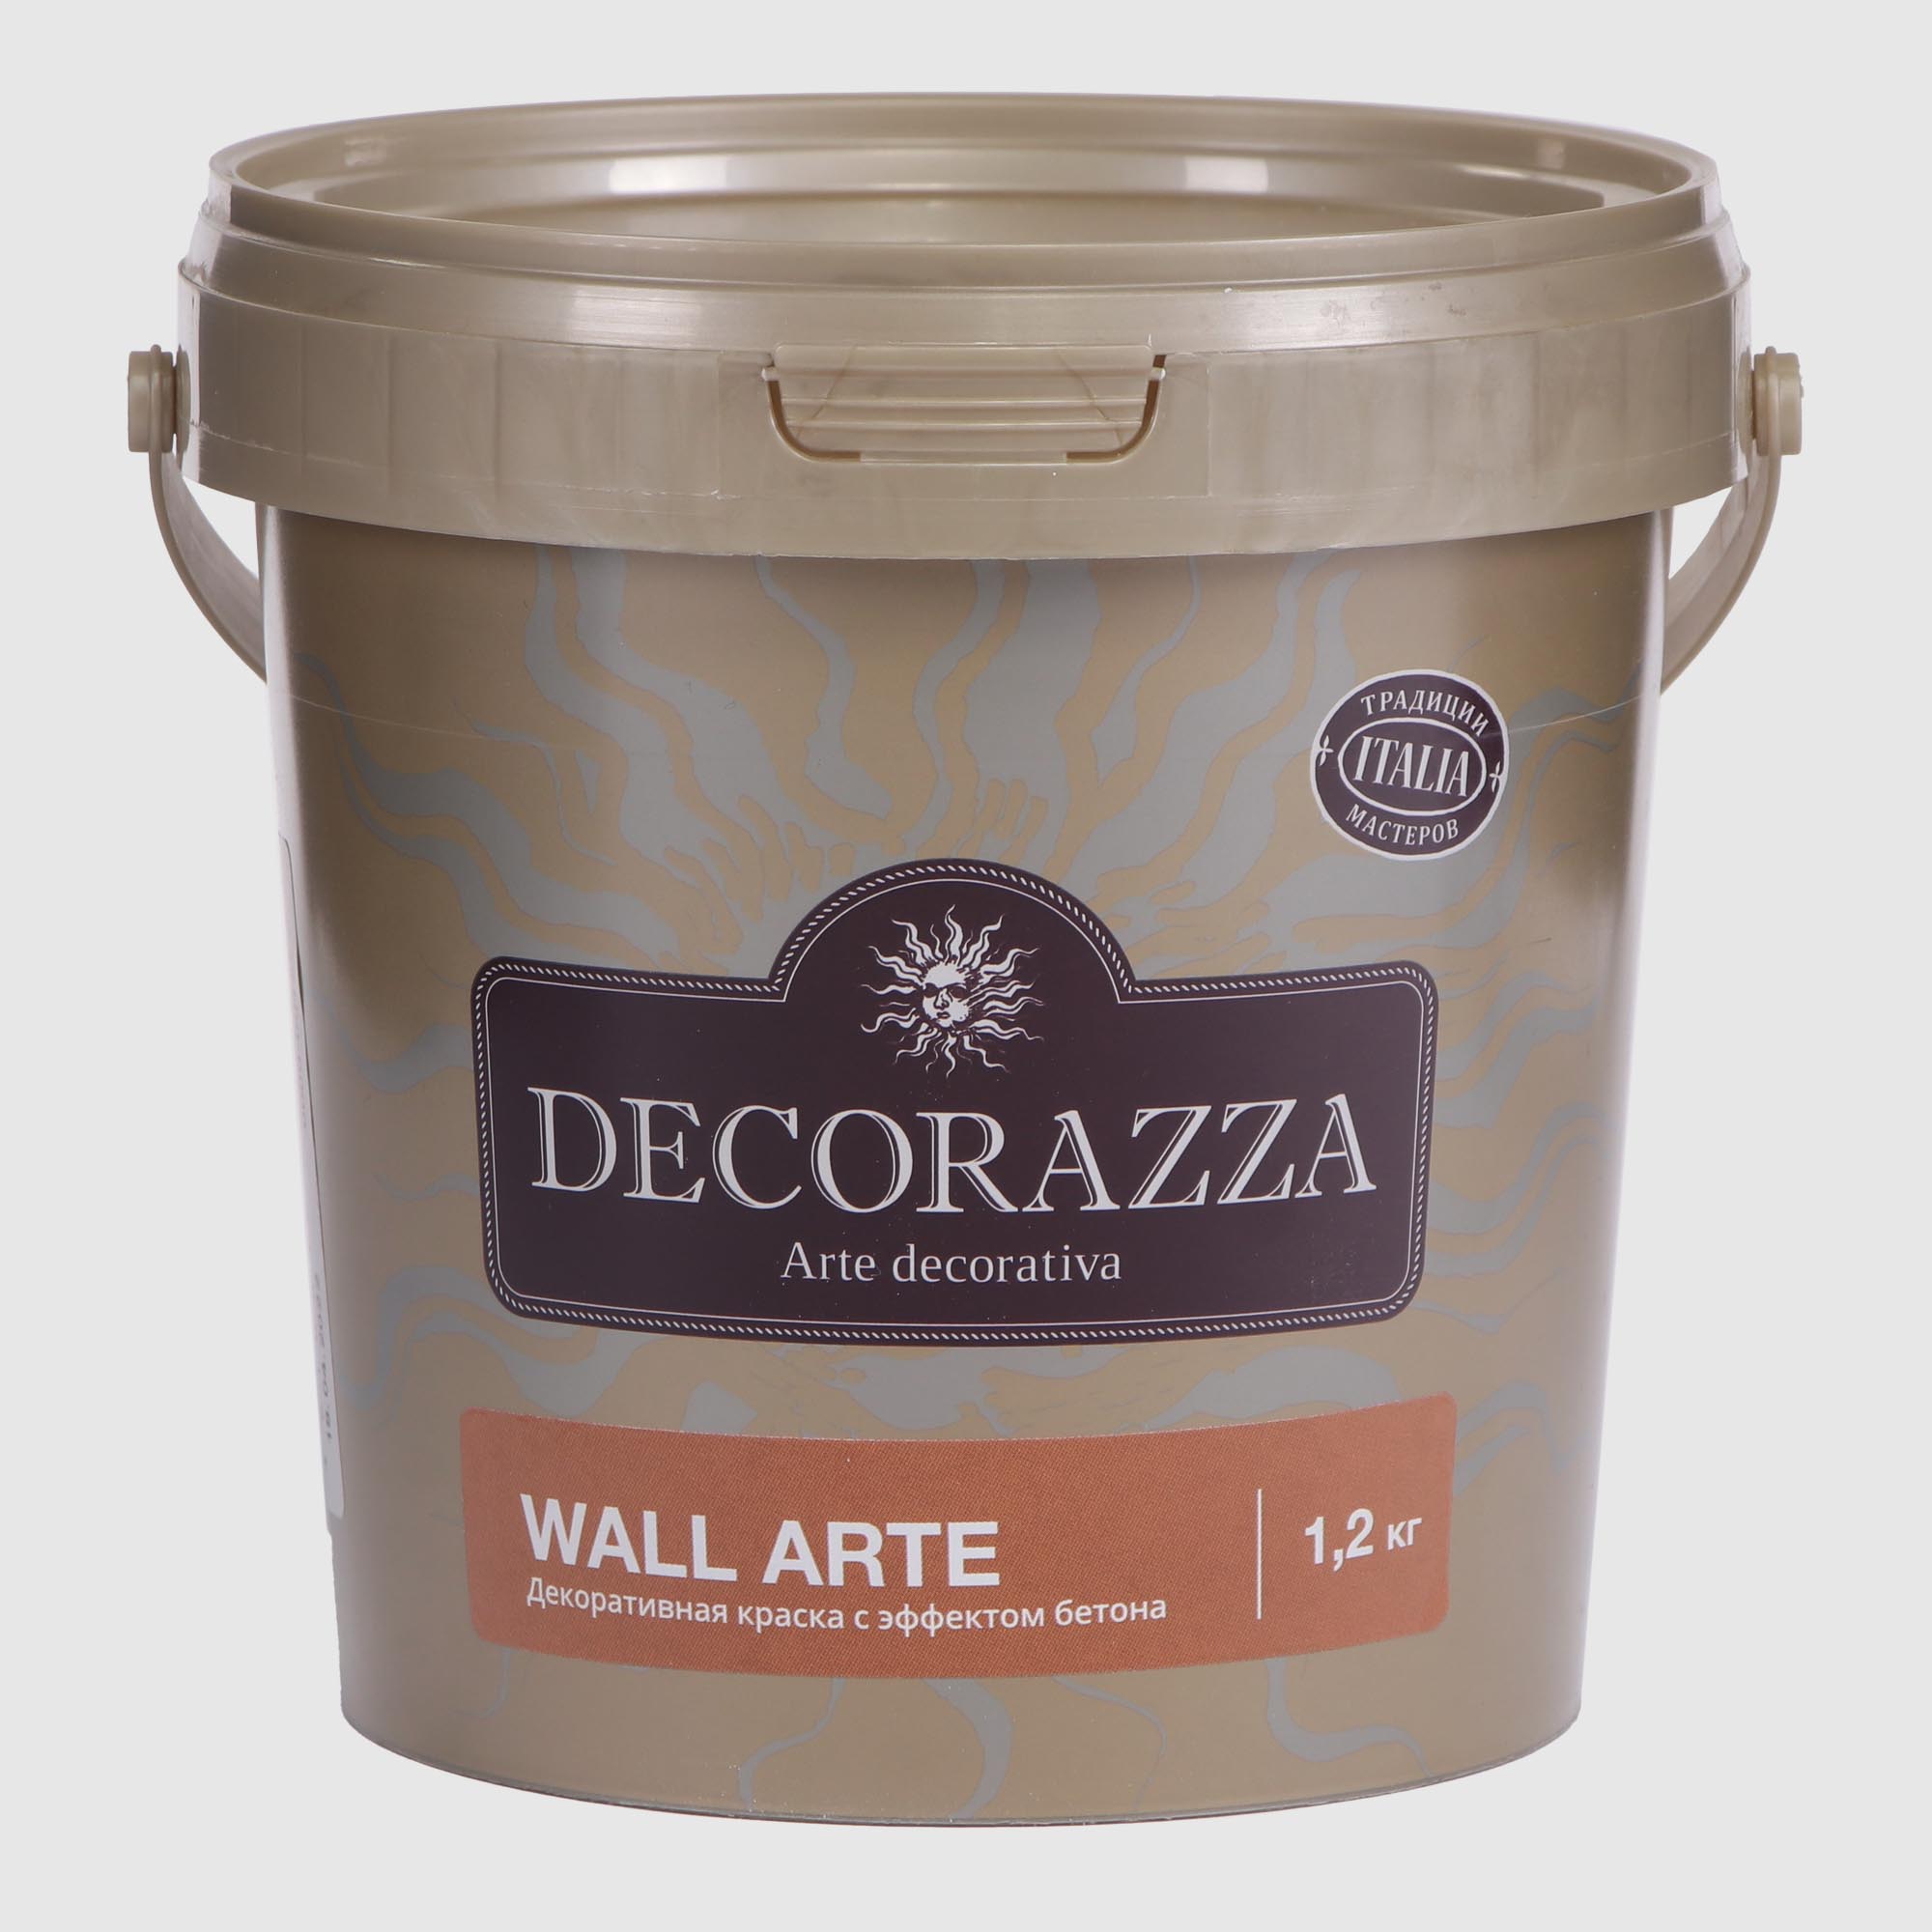 Покрытие Decorazza декоративное 1.2 кг